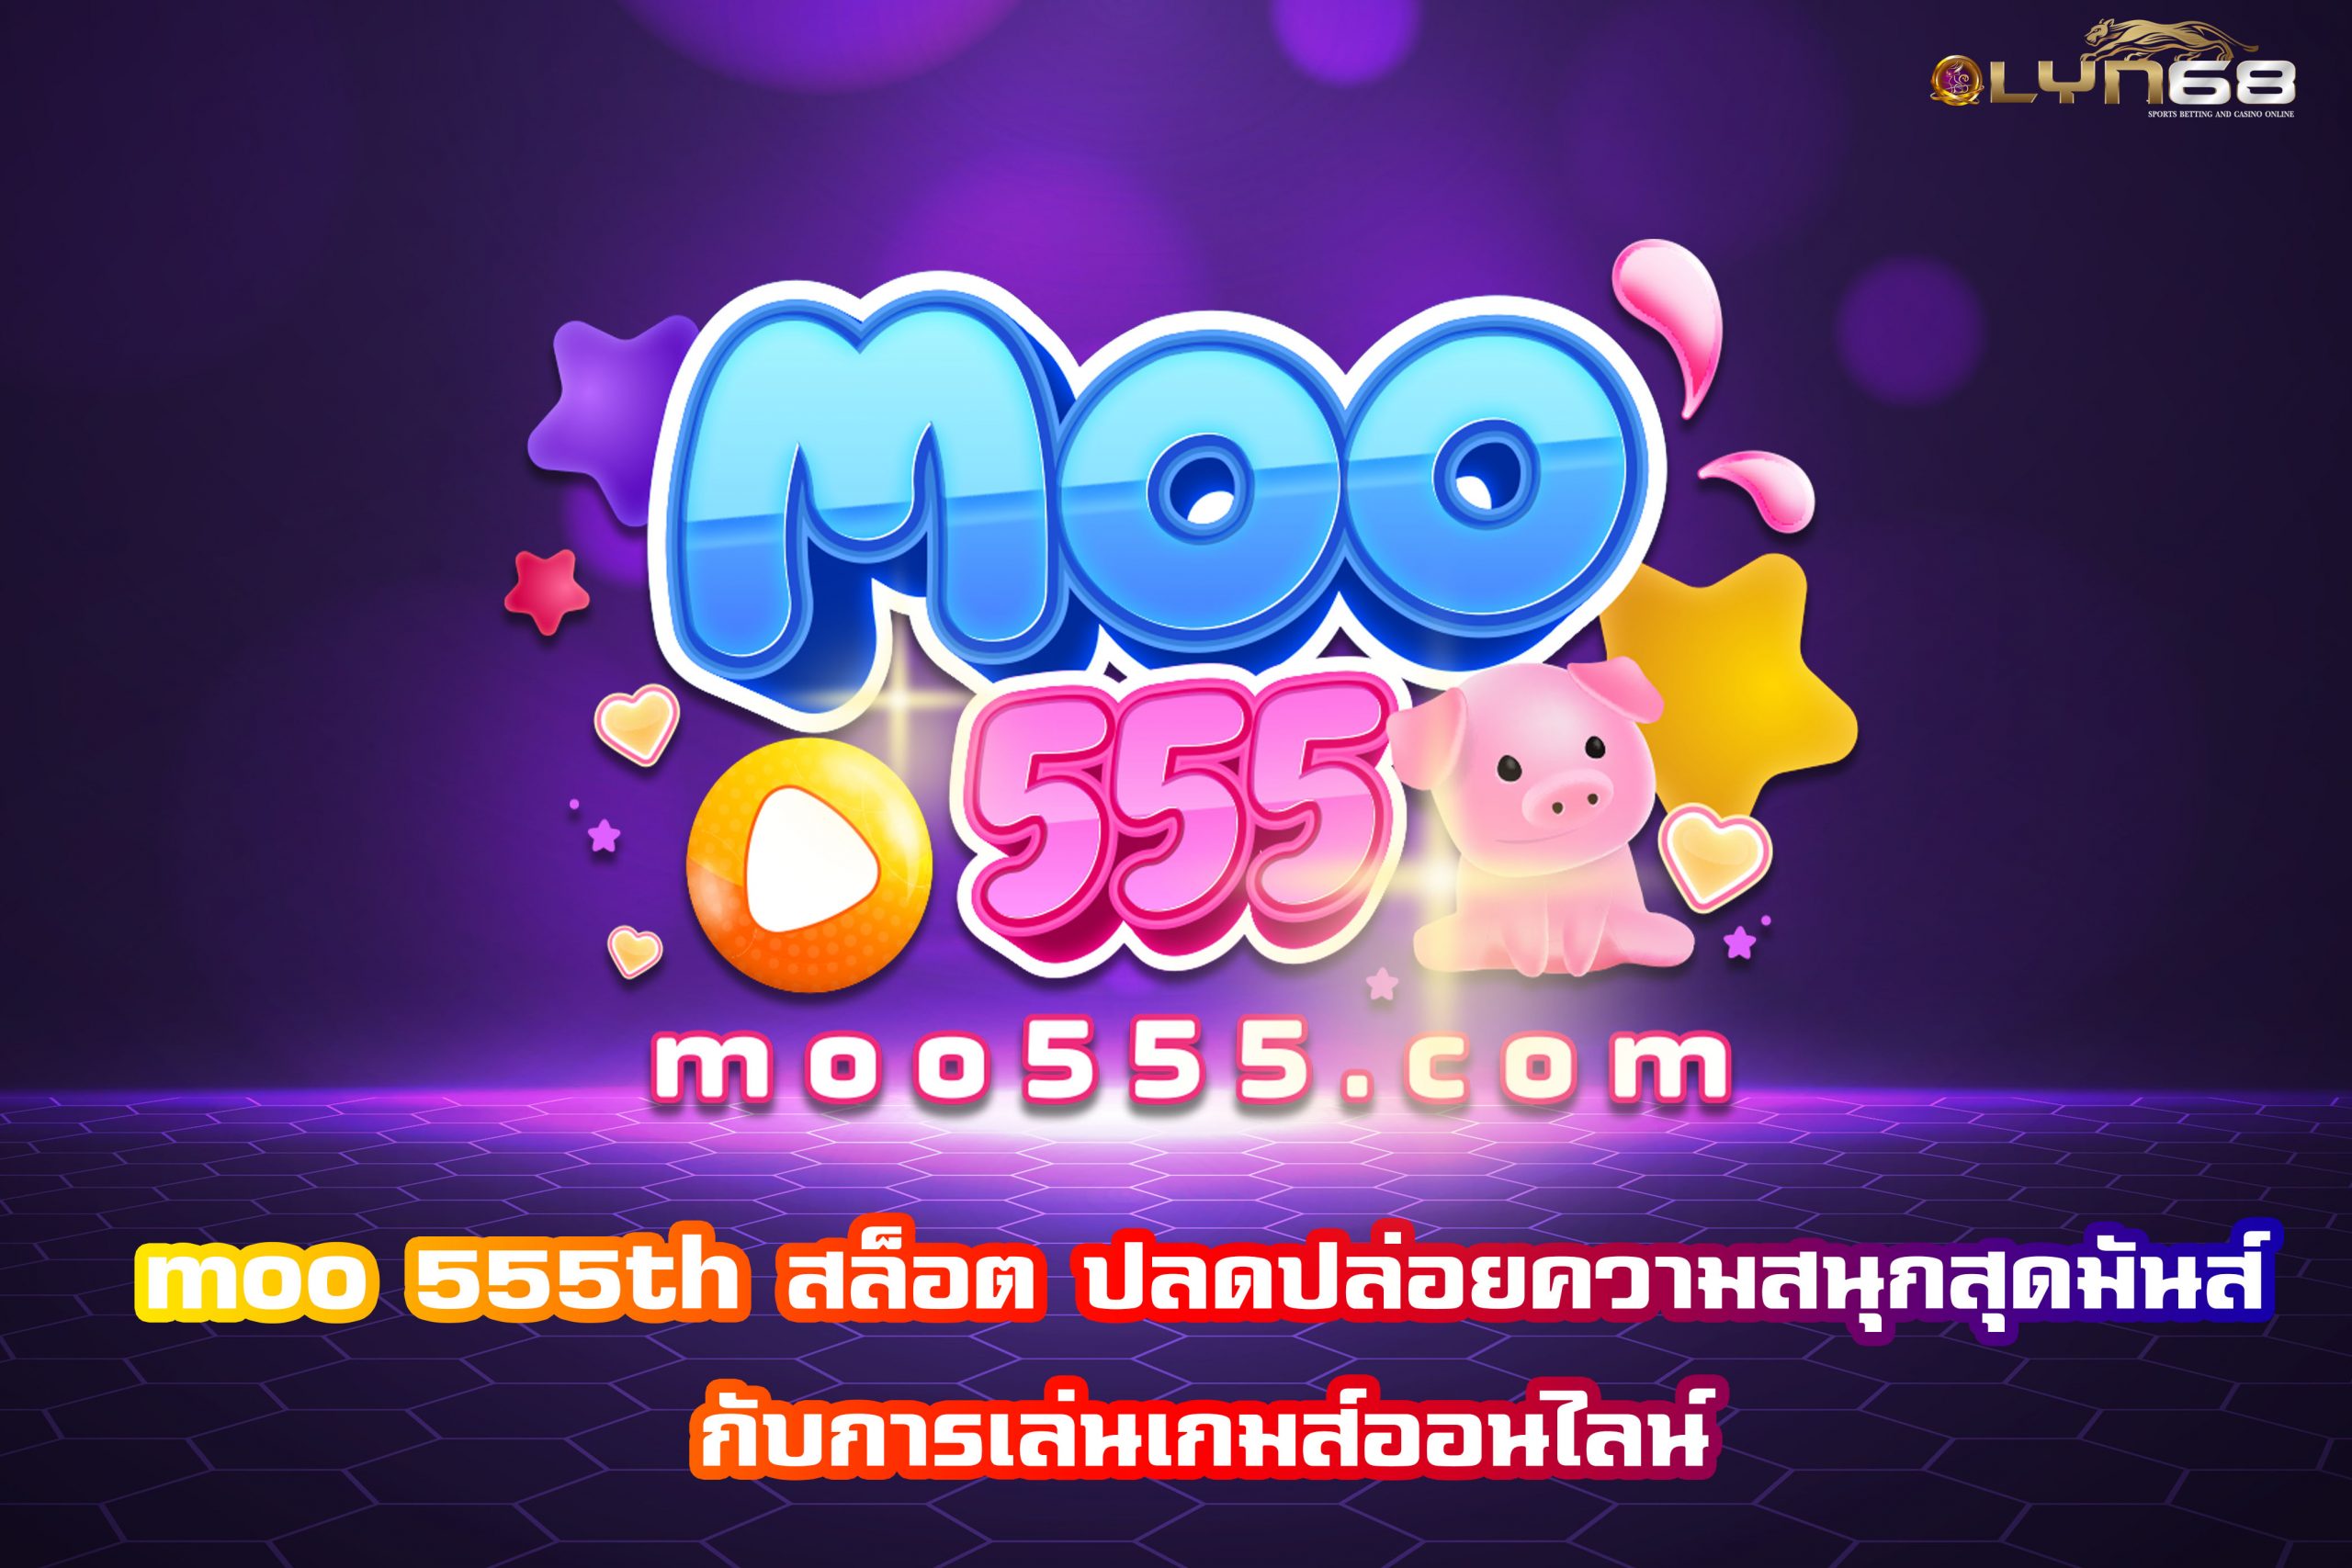 moo 555th สล็อต ปลดปล่อยความสนุกสุดมันส์กับการเล่นเกมส์ออนไลน์